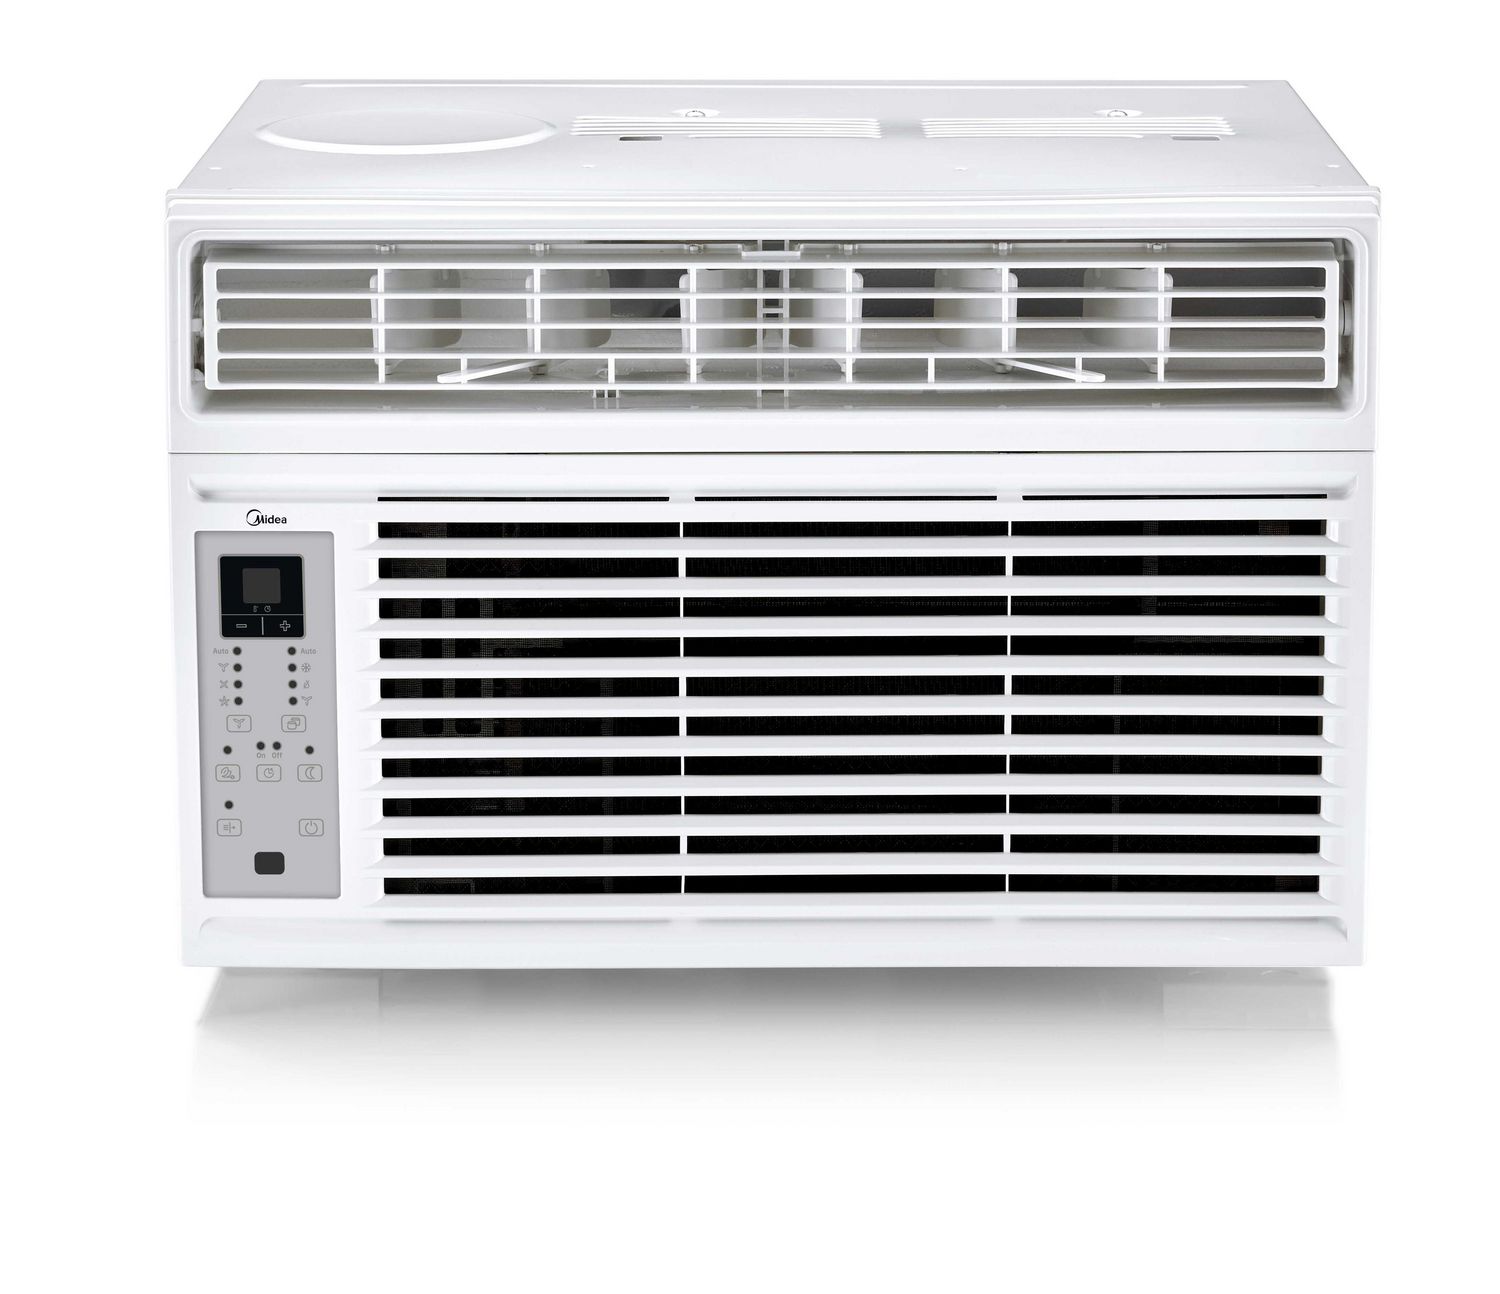 6000 btu air conditioner square feet